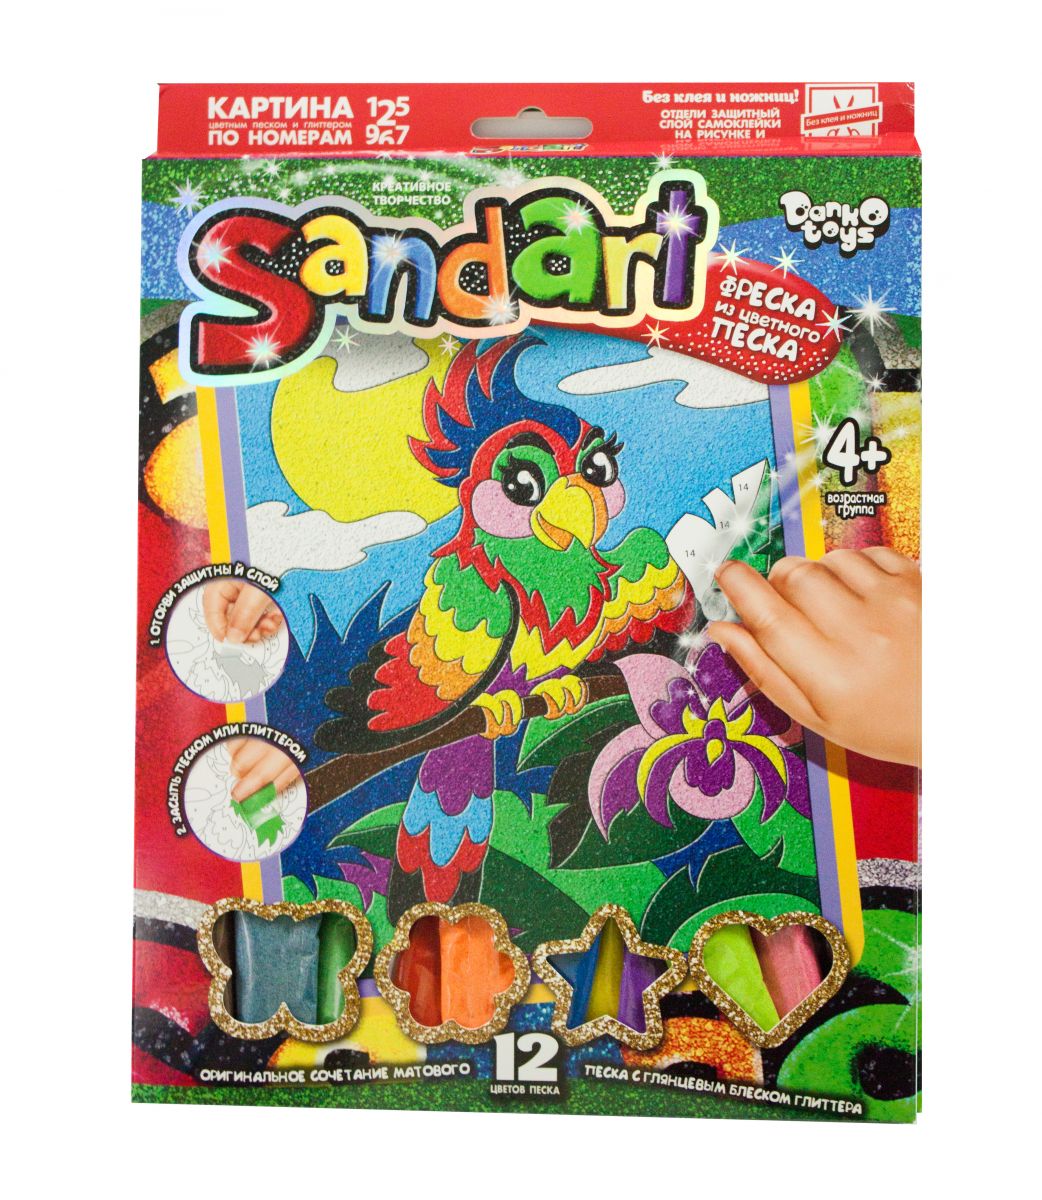 Набор для творчества Sandart Попугай SA-01-06 Dankotoys (SA-01-01,02,0)